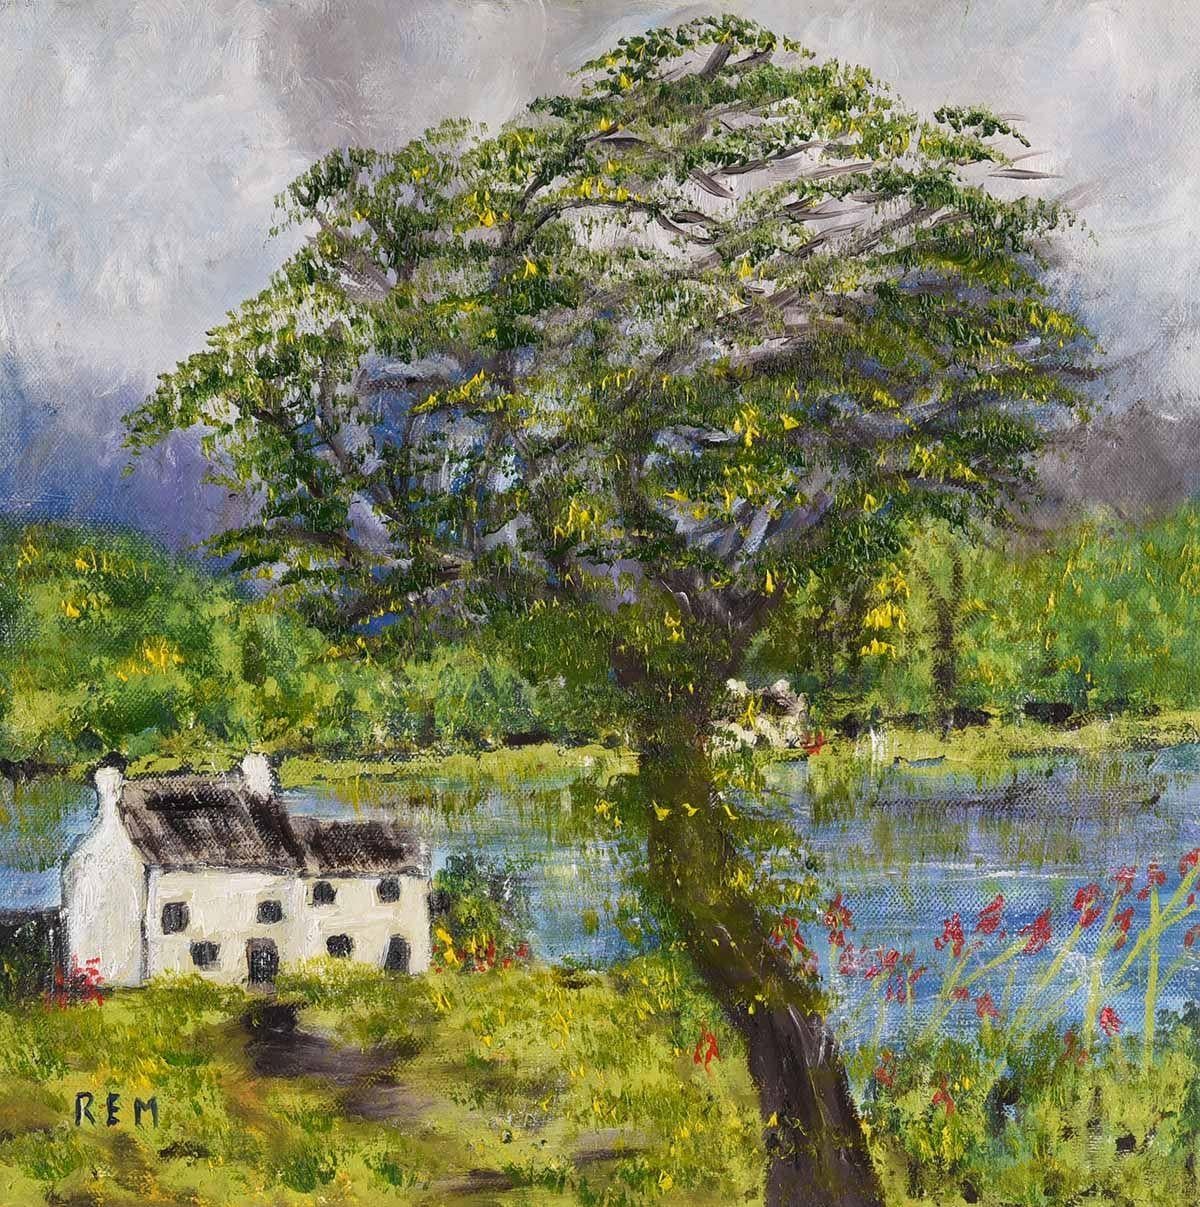 Abstract Painting Rose Elizabeth Moorcroft - Paysage abstrait avec ferme et arbre en Irlande par un artiste britannique